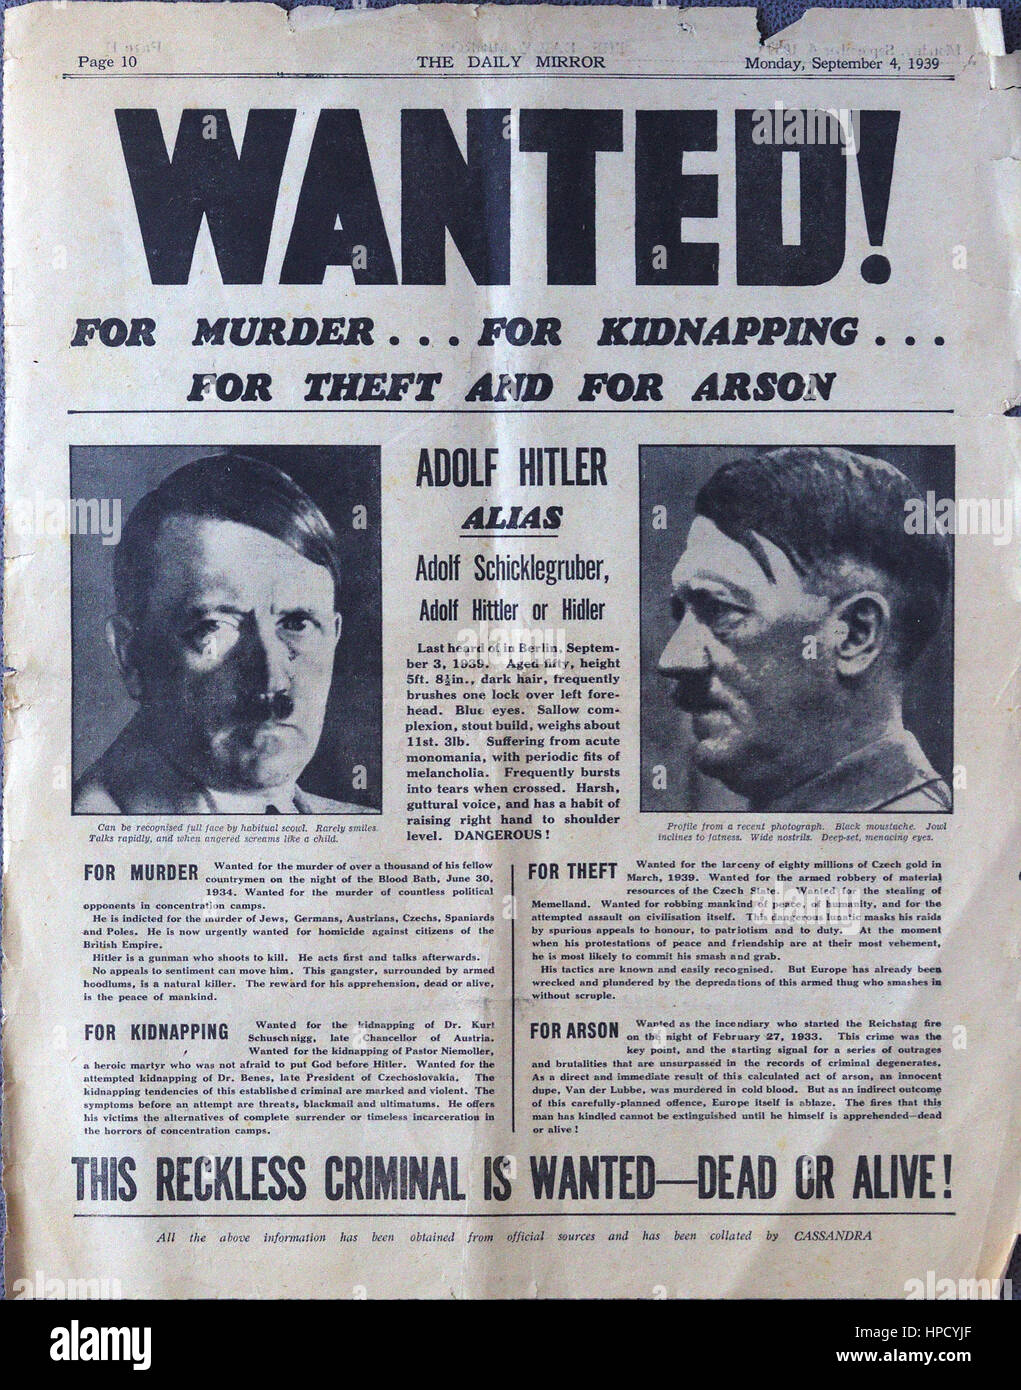 Dieser "Steckbrief" präsentiert Adolf Hitler als einen "rücksichtslosen kriminellen... Wollte Hitler-tot oder lebendig ". Seite von September 4,1939 Daily Mirror Zeitung Stockfoto